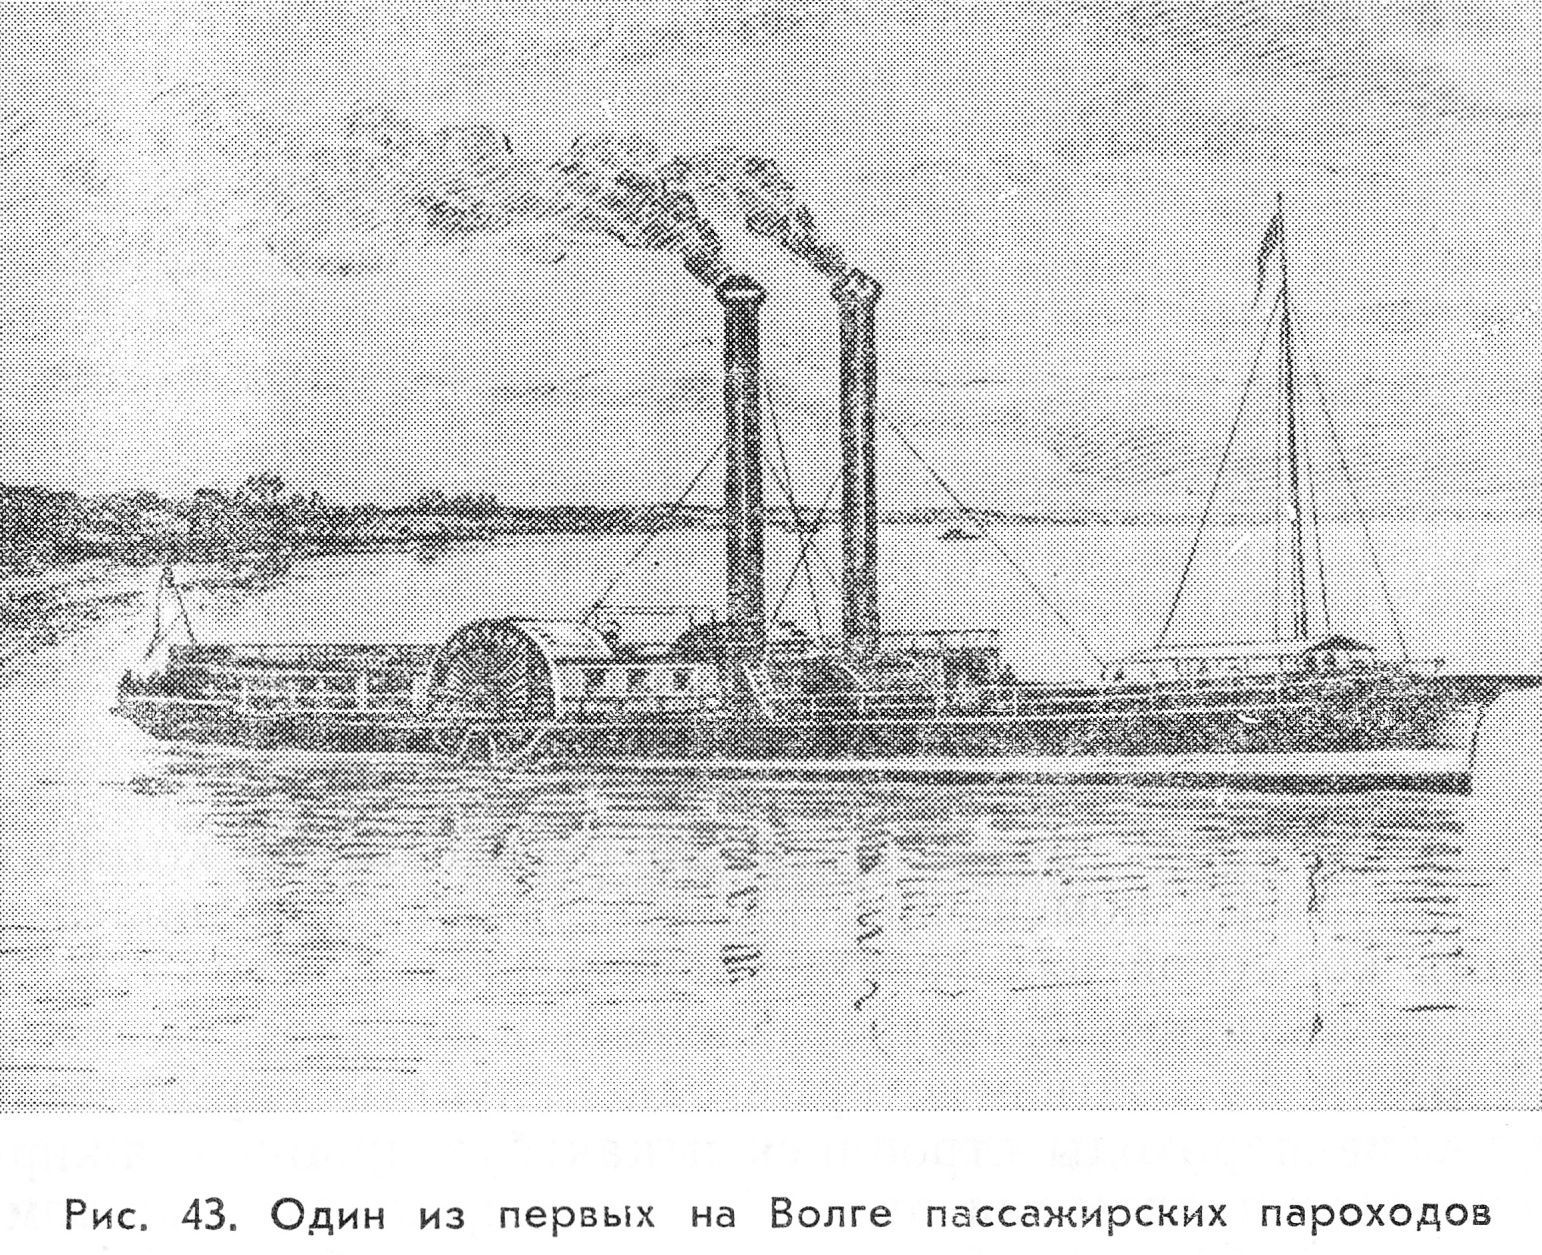 Скажи пароход. Пароход Архимед 1838. Первый пароход в Тюмени. Первый Сибирский пароход основа.